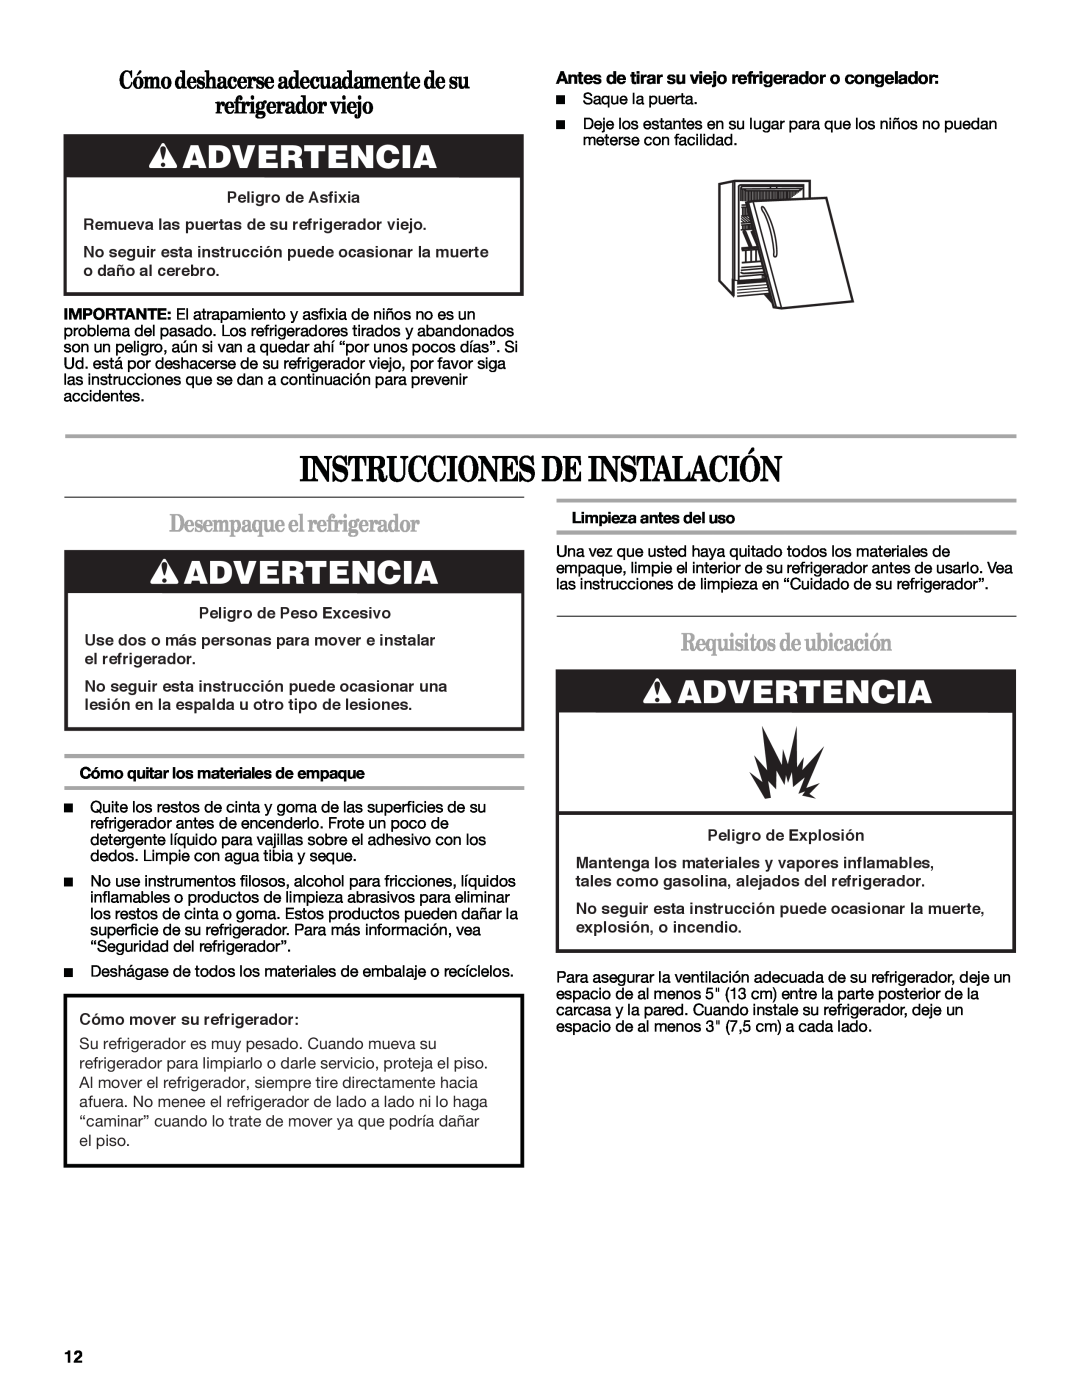 Whirlpool WAR349BSL manual Instrucciones De Instalación, Advertencia, Cómodeshacerseadecuadamentedesu refrigeradorviejo 